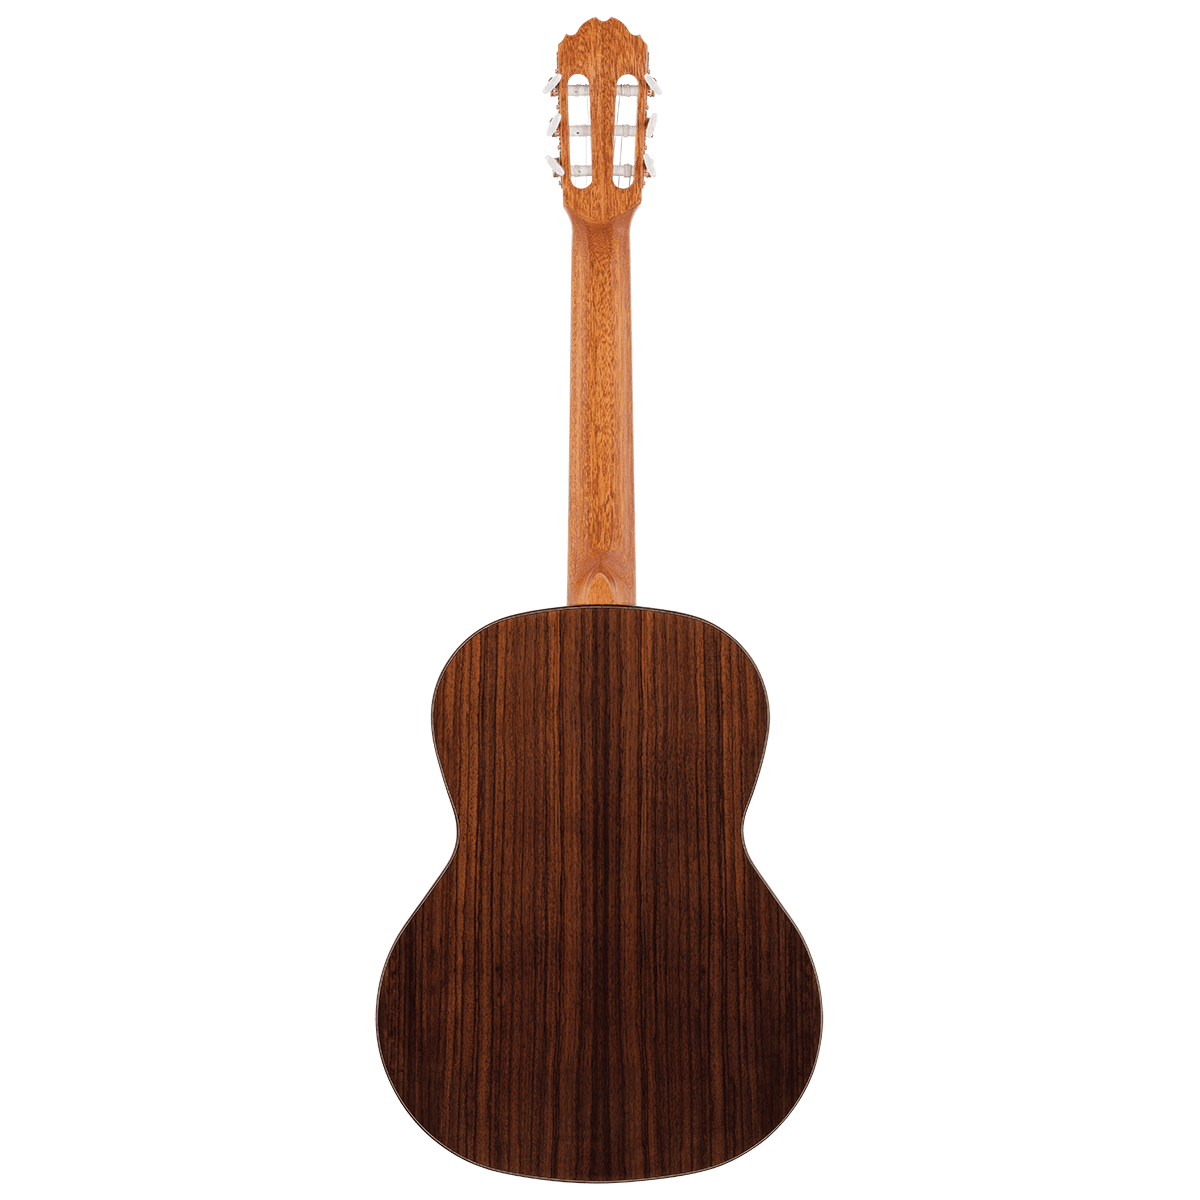 Kremona F65S Fiesta Spruce / Rosewood Classical Guitar w/case